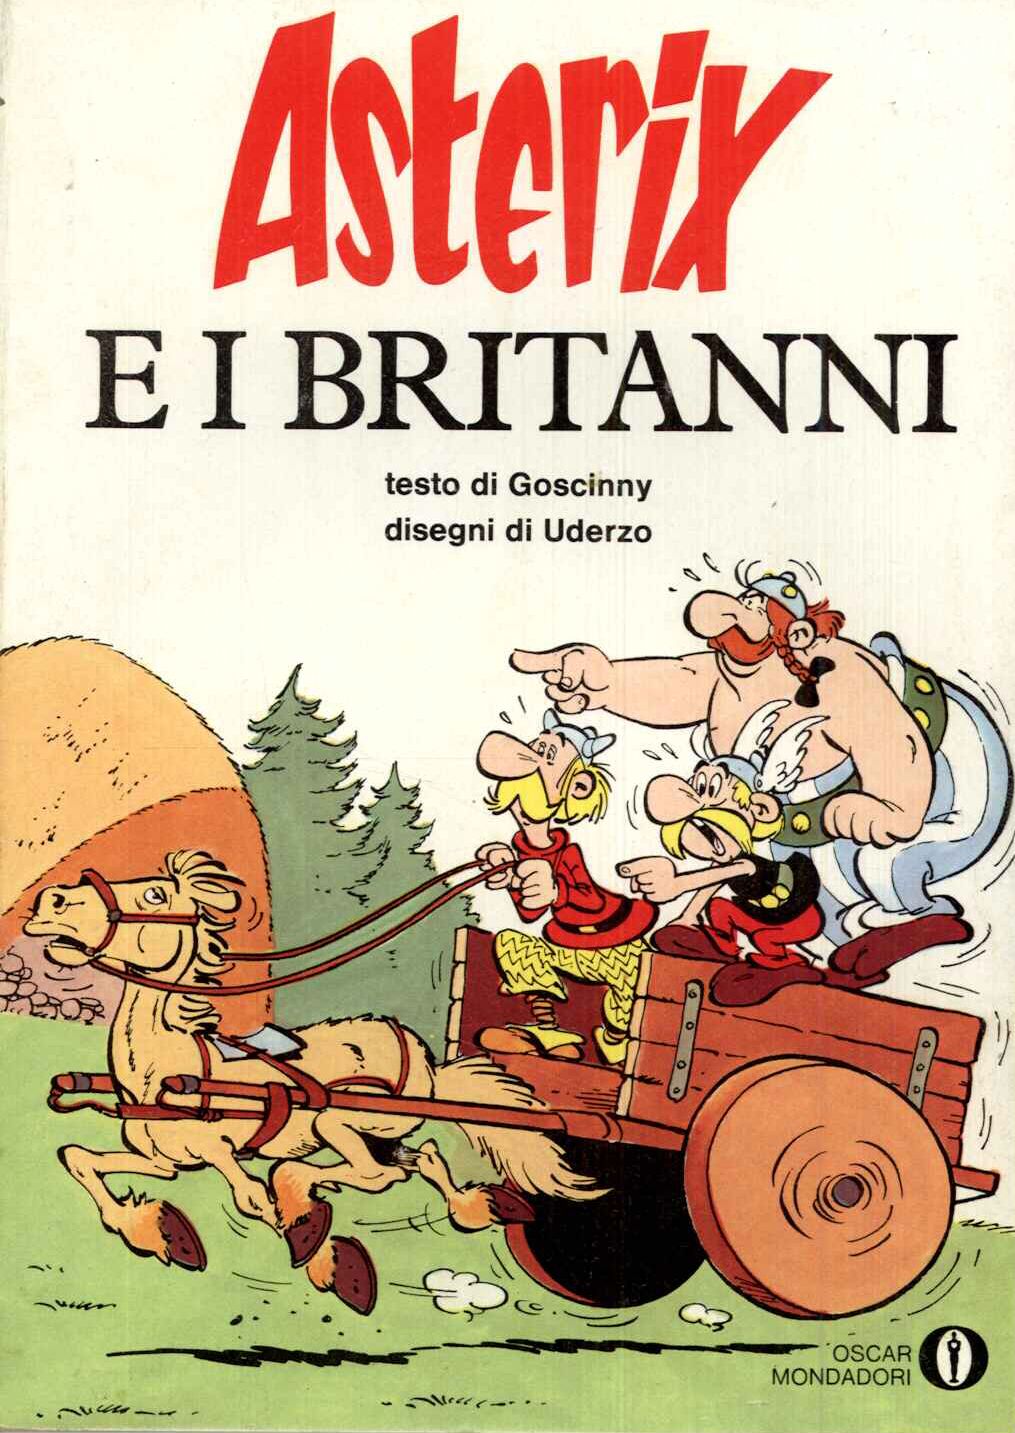 Asterix e i Britanni